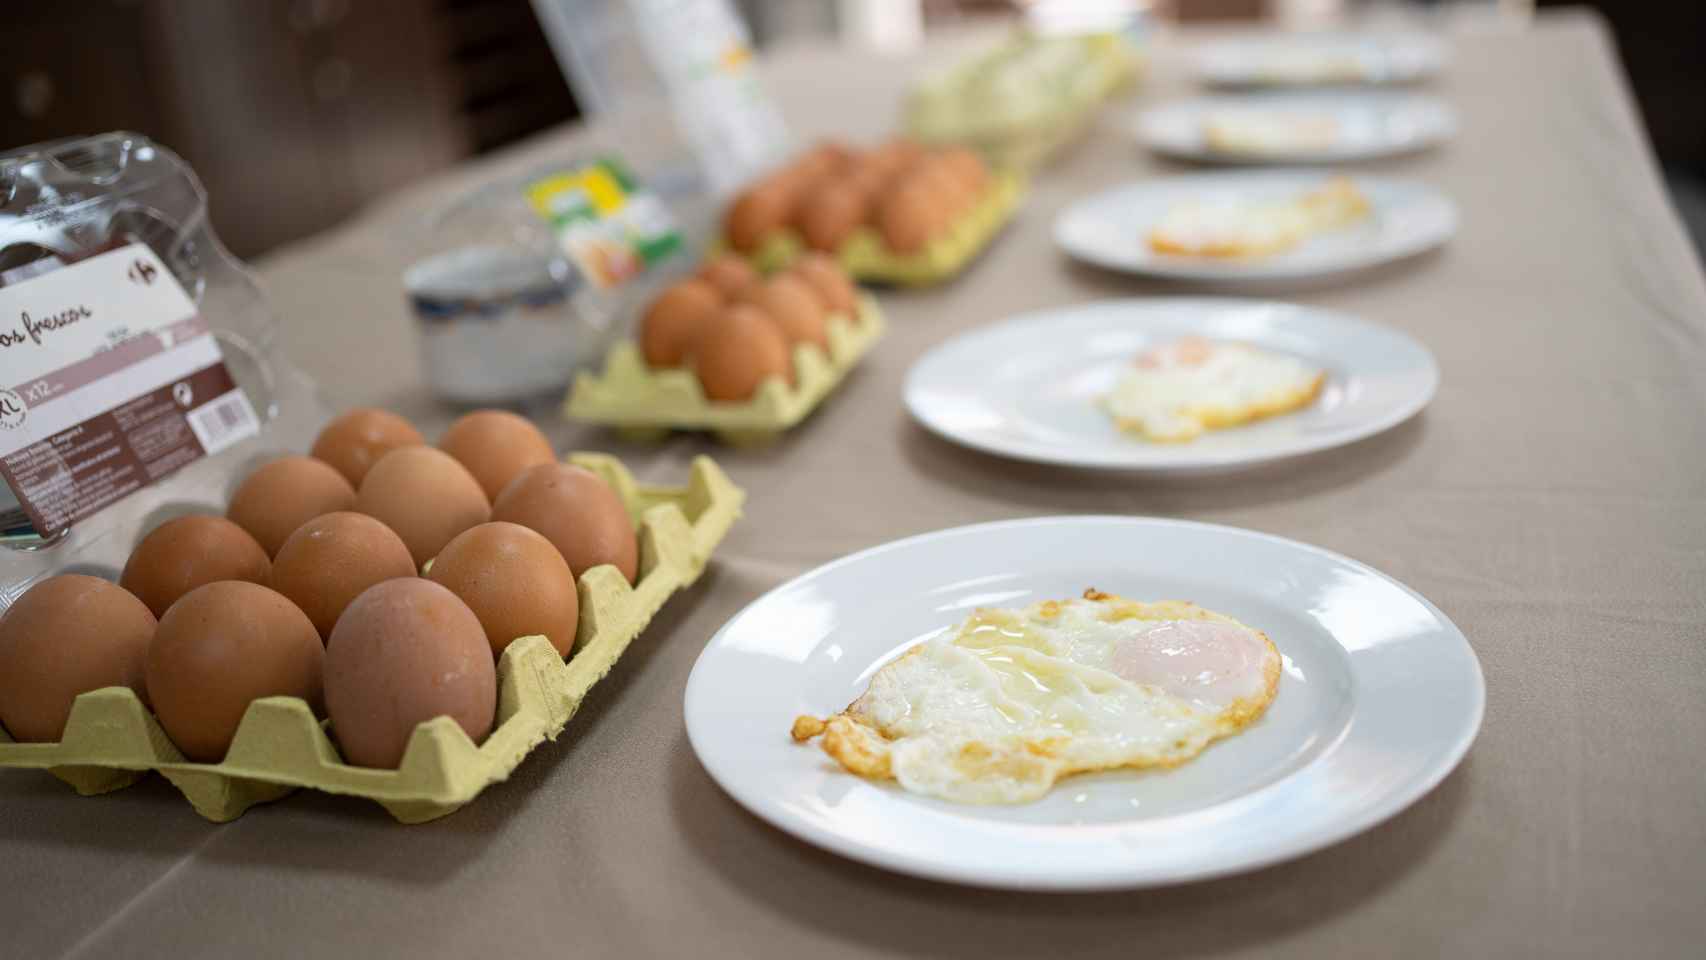 Los huevos fritos recién hechos, antes de ser valorados por Rubén Príncipe.